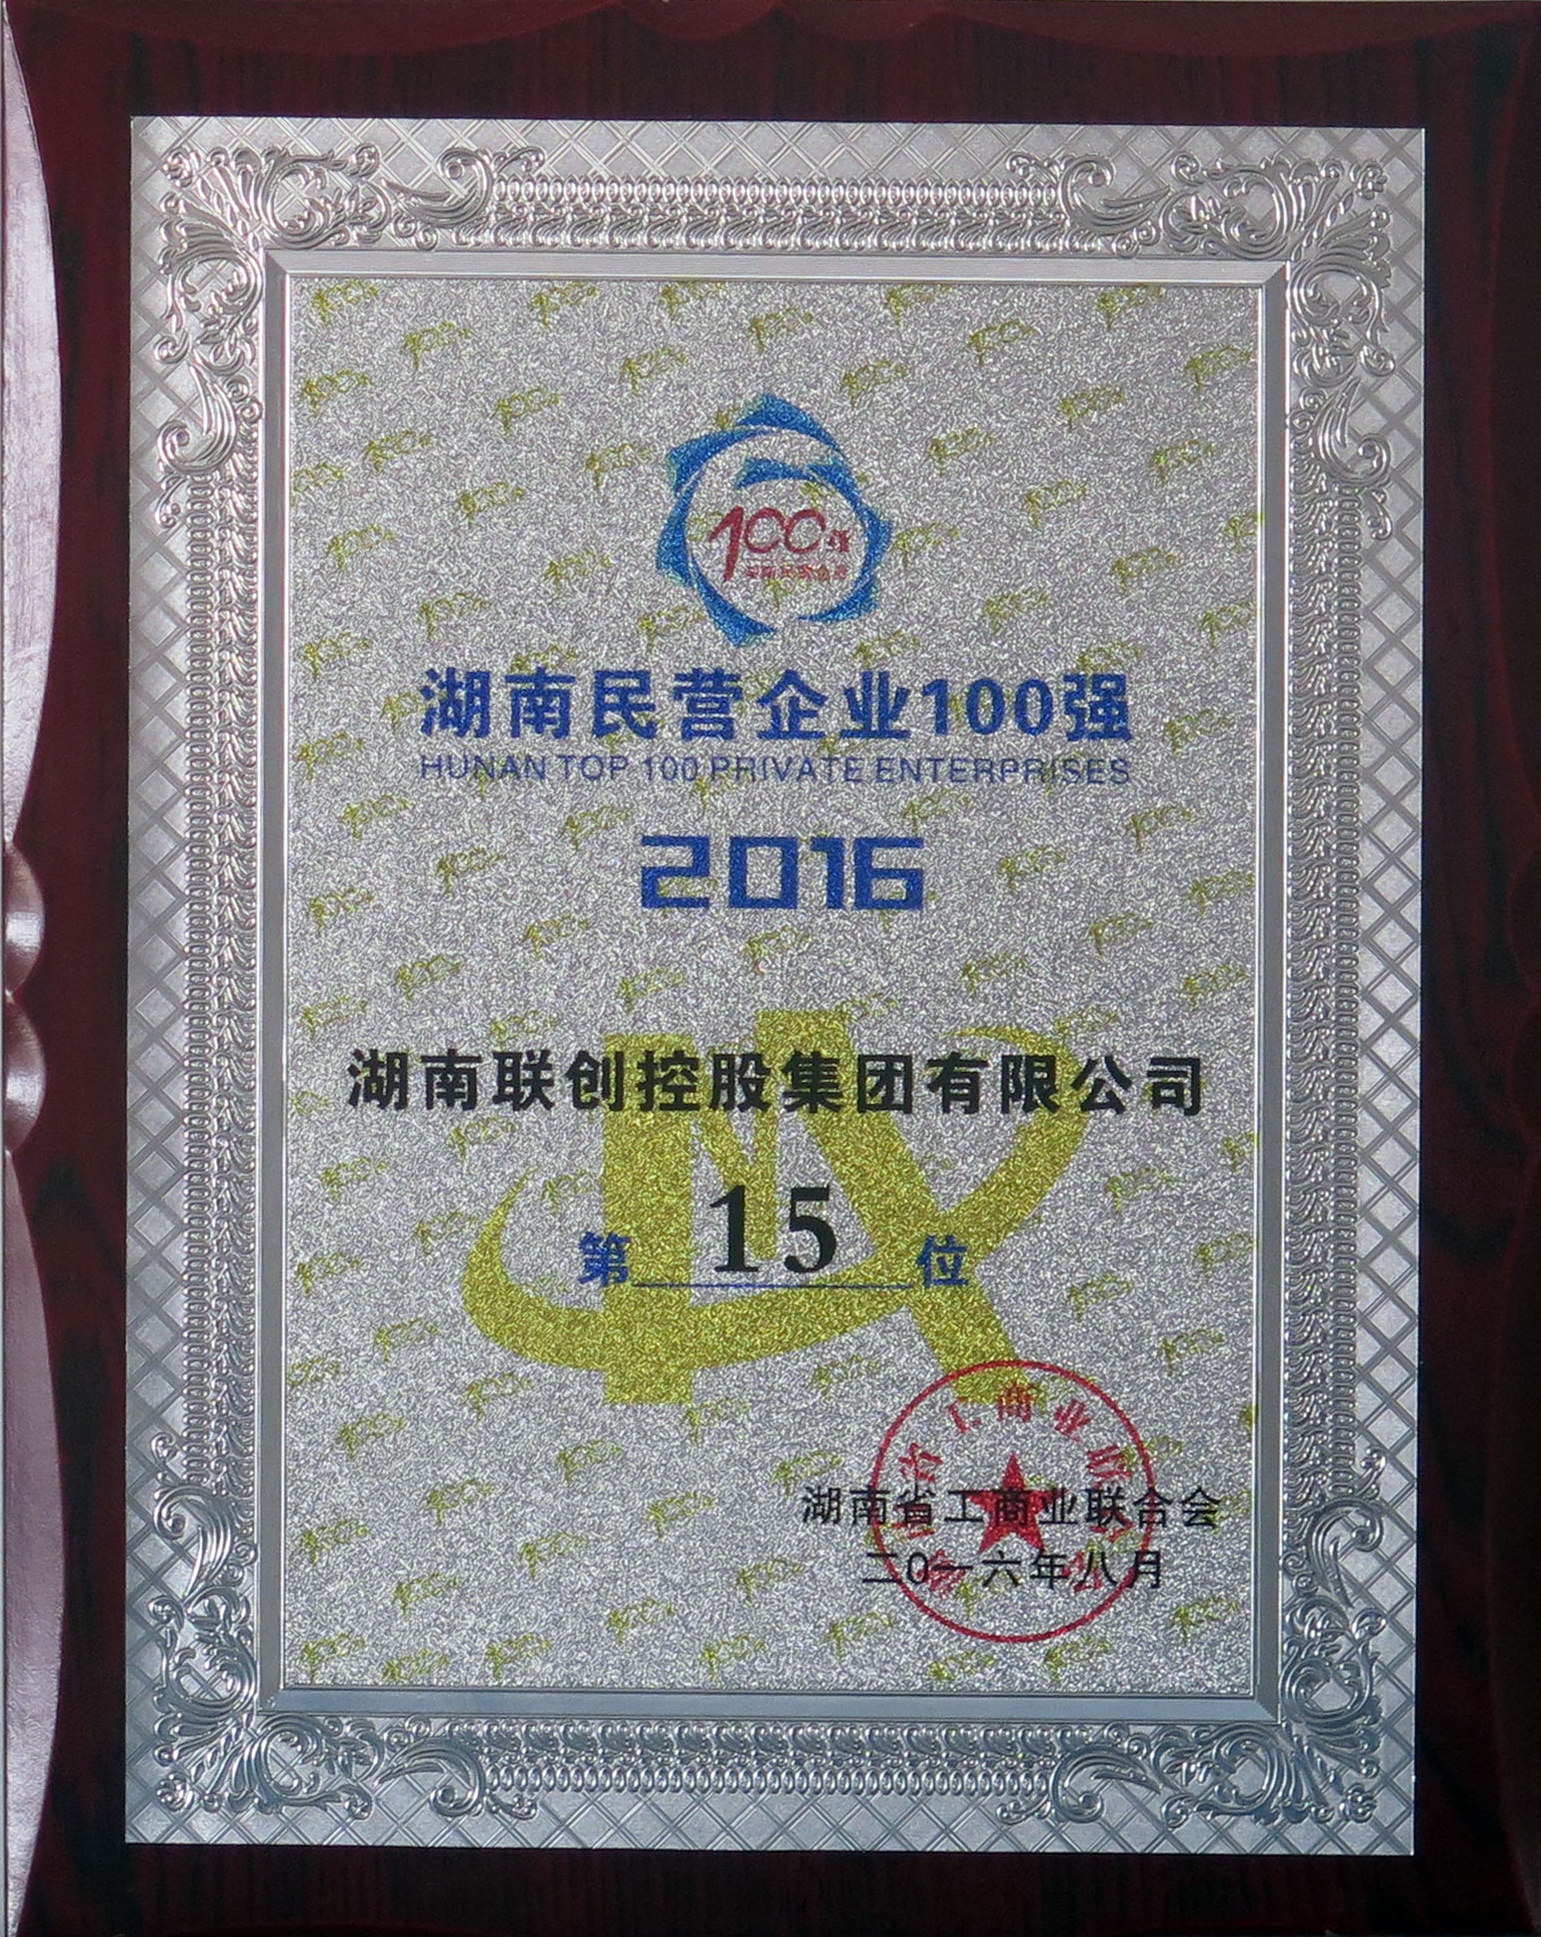 2016年湖南民营企业100强